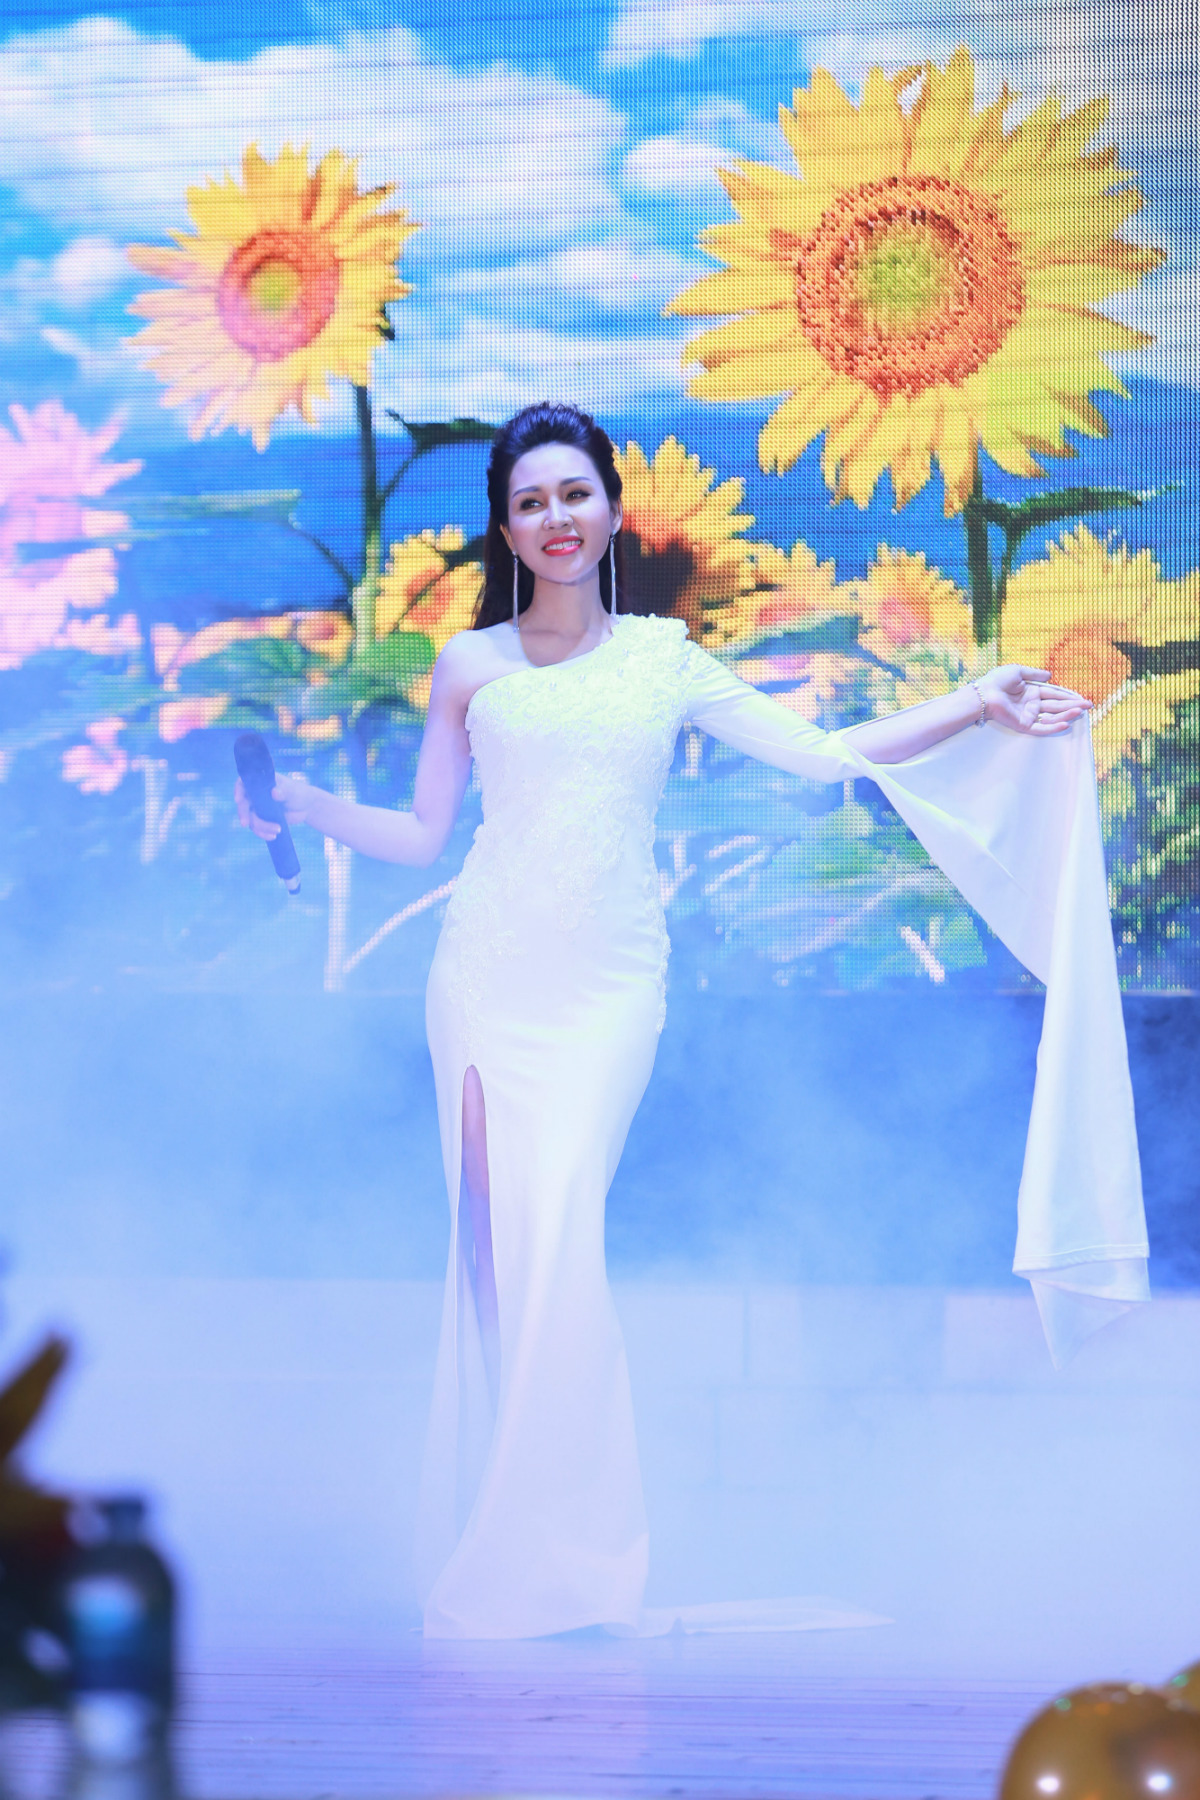 Trong đêm nhạc, Khánh Ly thể hiện ca khúc “Ngày vừa chợp mắt” của Giáng Son - Nguyễn Vĩnh Tiến.